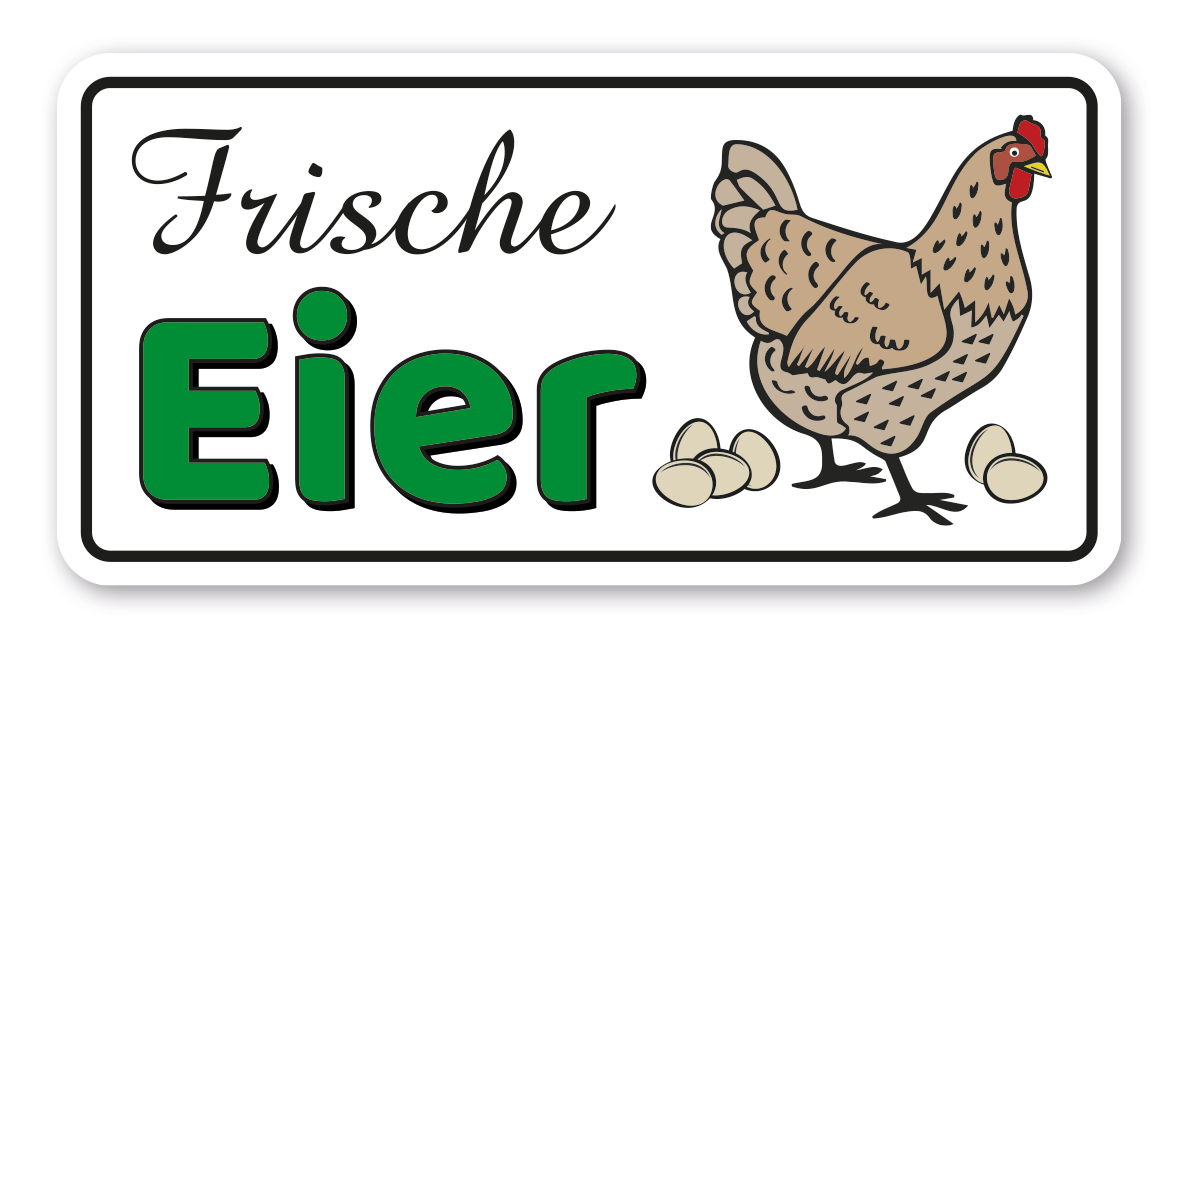 Preisschild Hühner Eier Bio Verkaufsschild Preisauszeichnung PKW-Verkaufsschild 